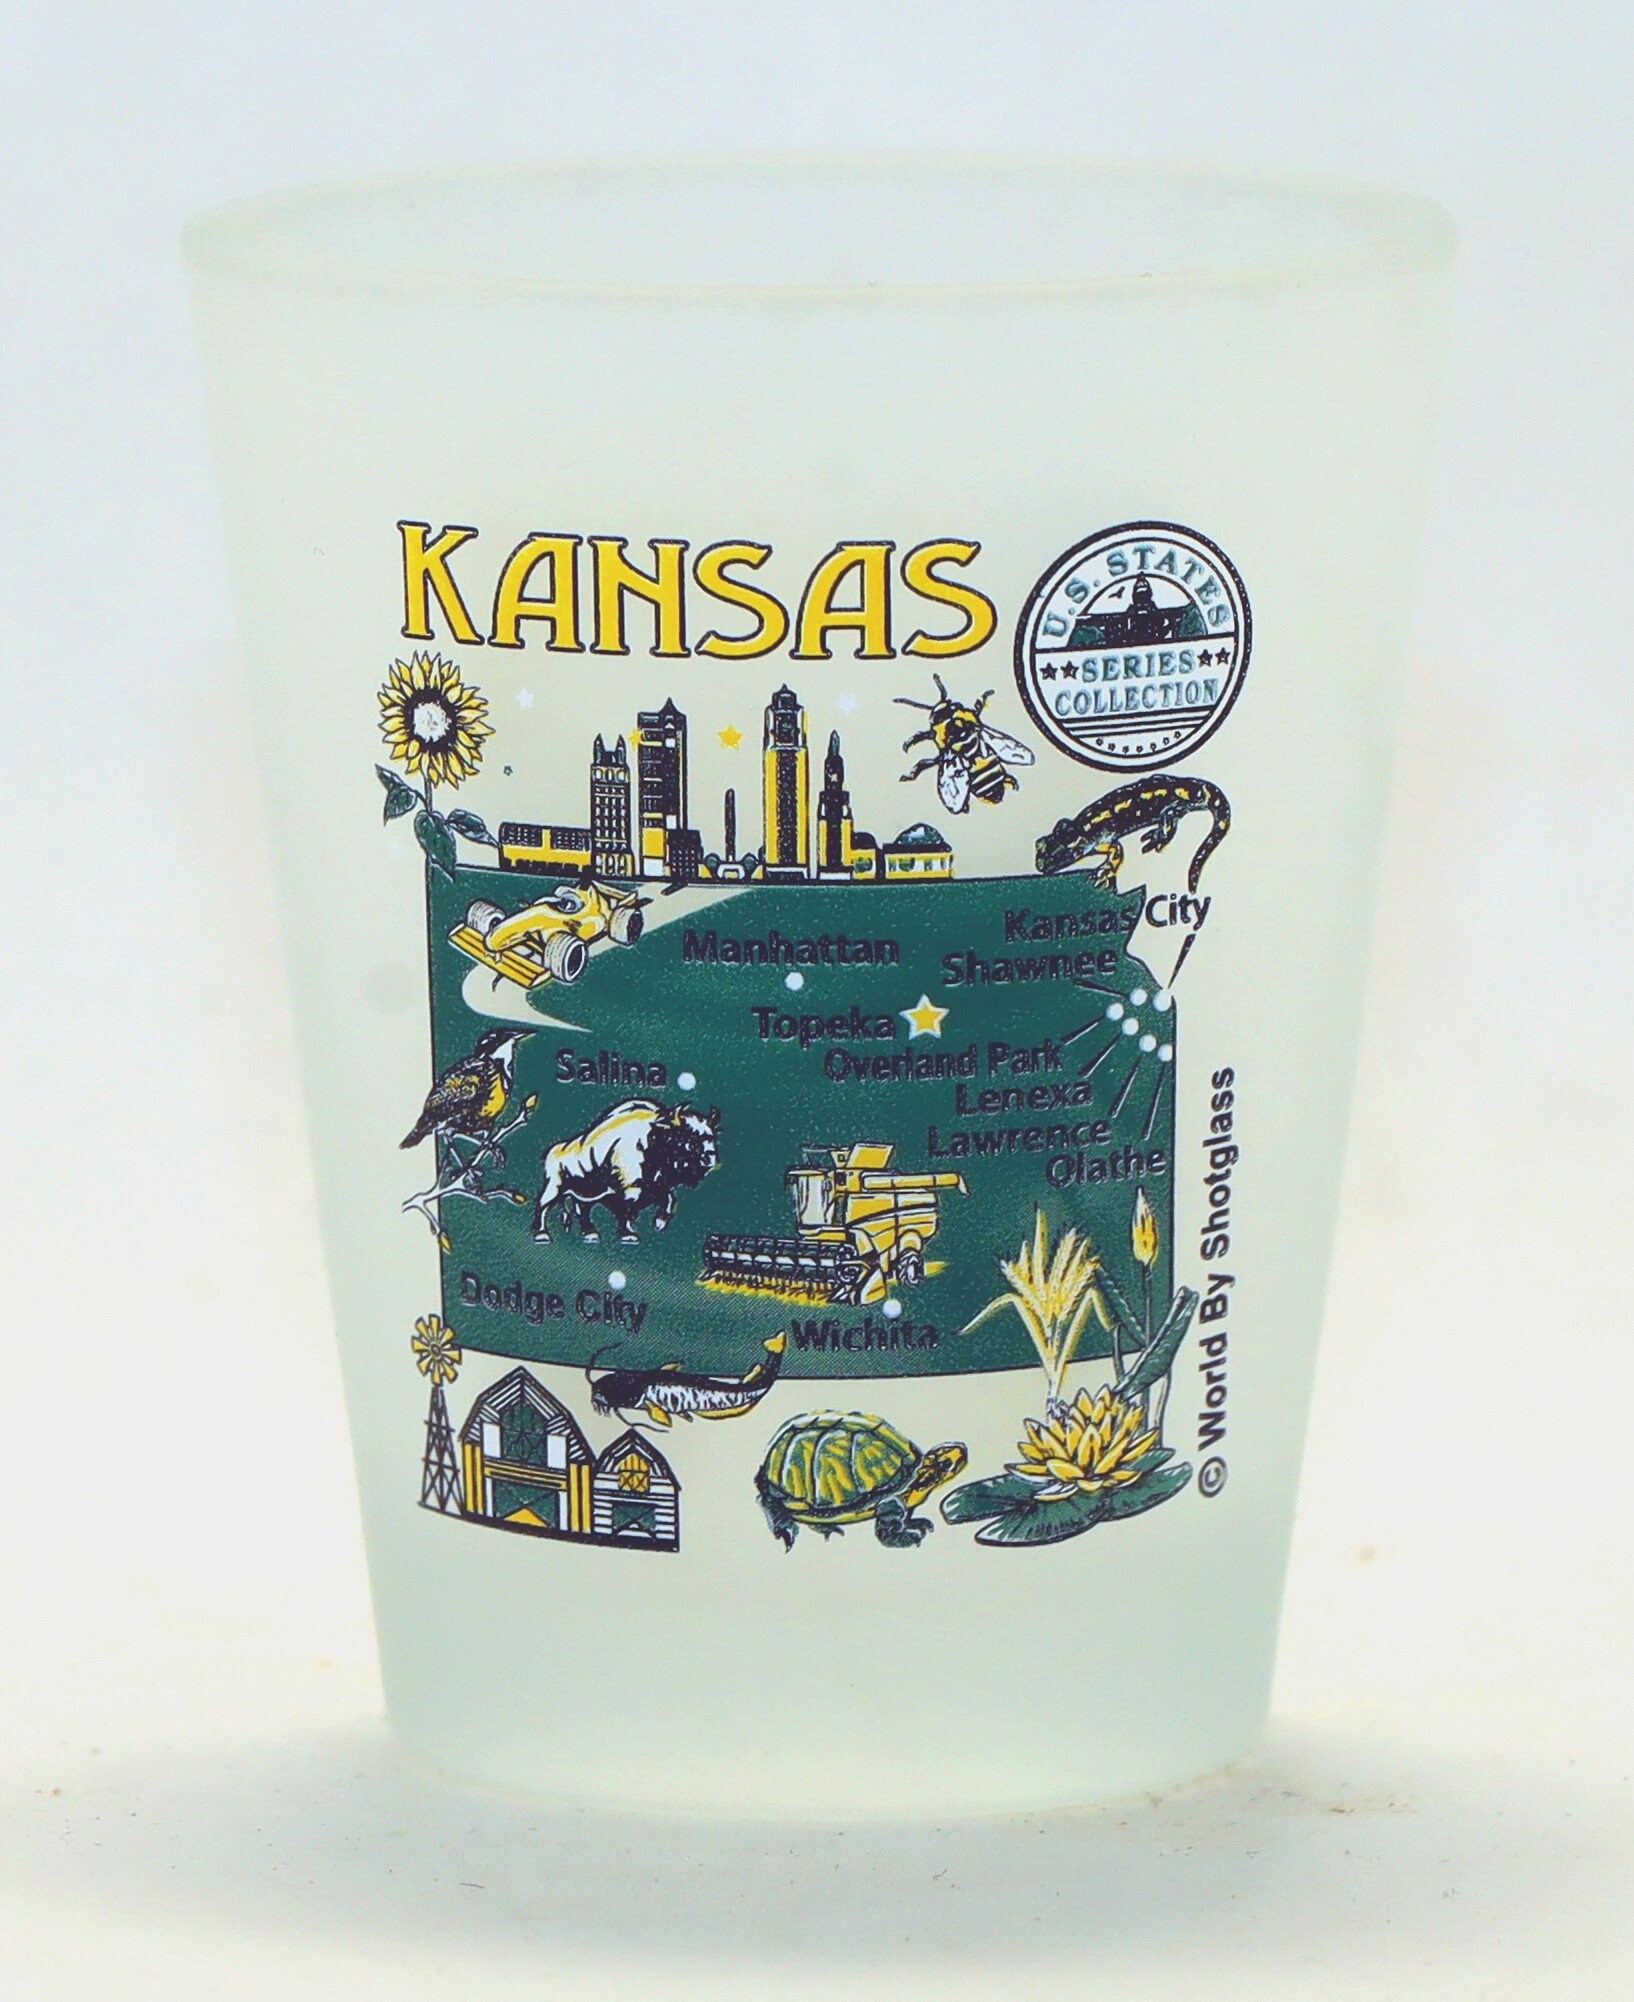 Kansas City Chiefs 2 Ounce Collector Shot Glass